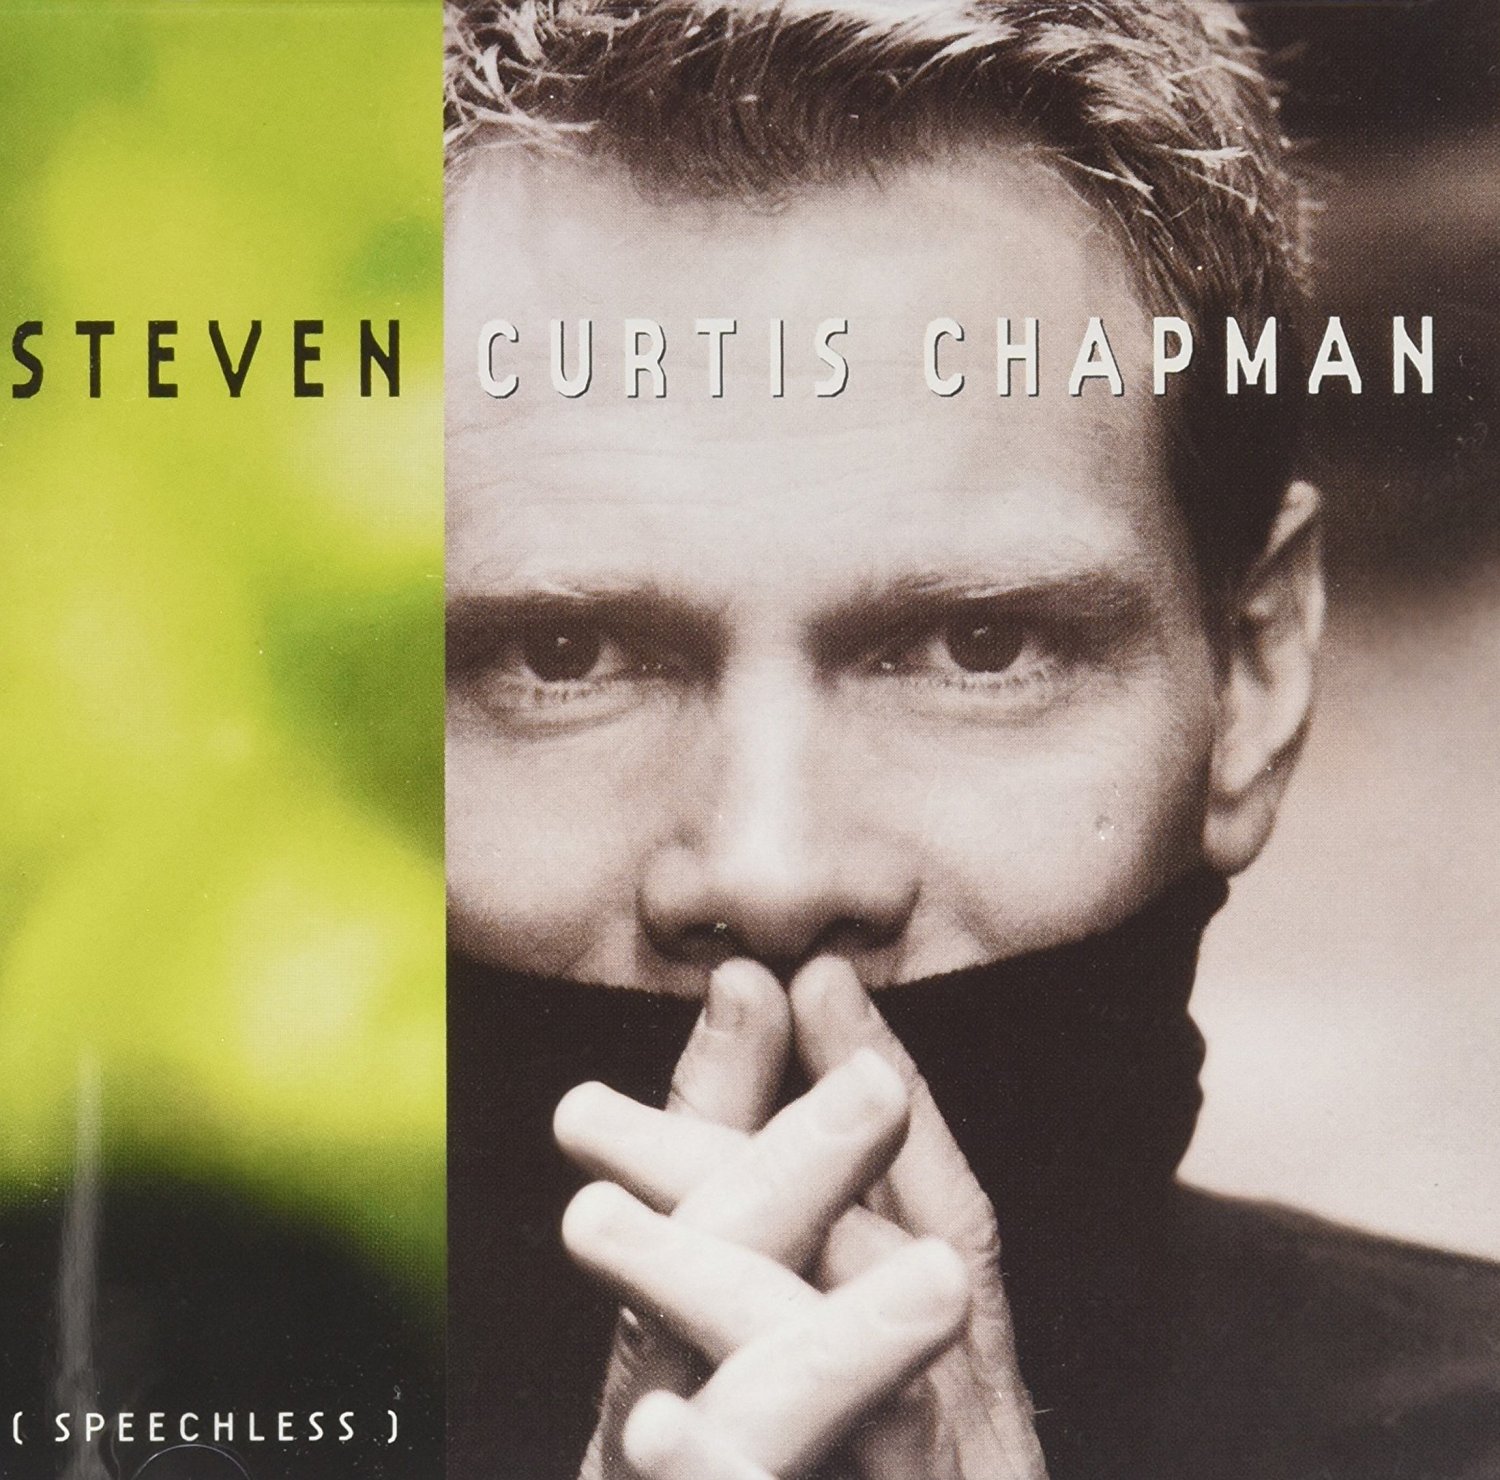 Steven Curtis Chapman - Speechless (CD)